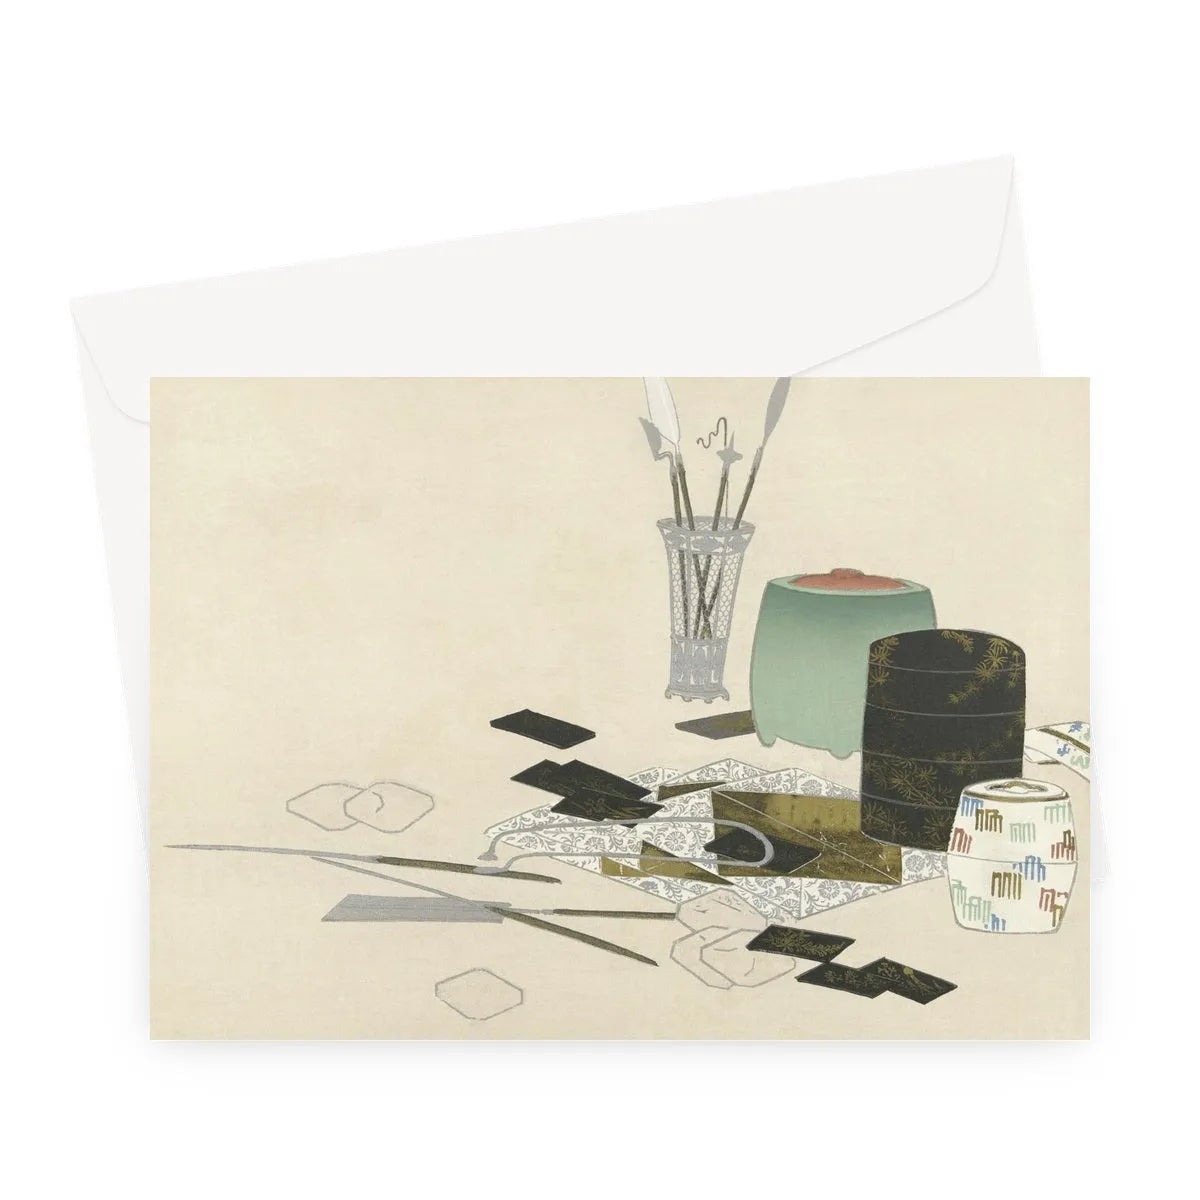 Art Supplies By Kamisaka Sekka Greeting Card - A5 Landscape / 1 Card - Notebooks & Notepads - Aesthetic Art